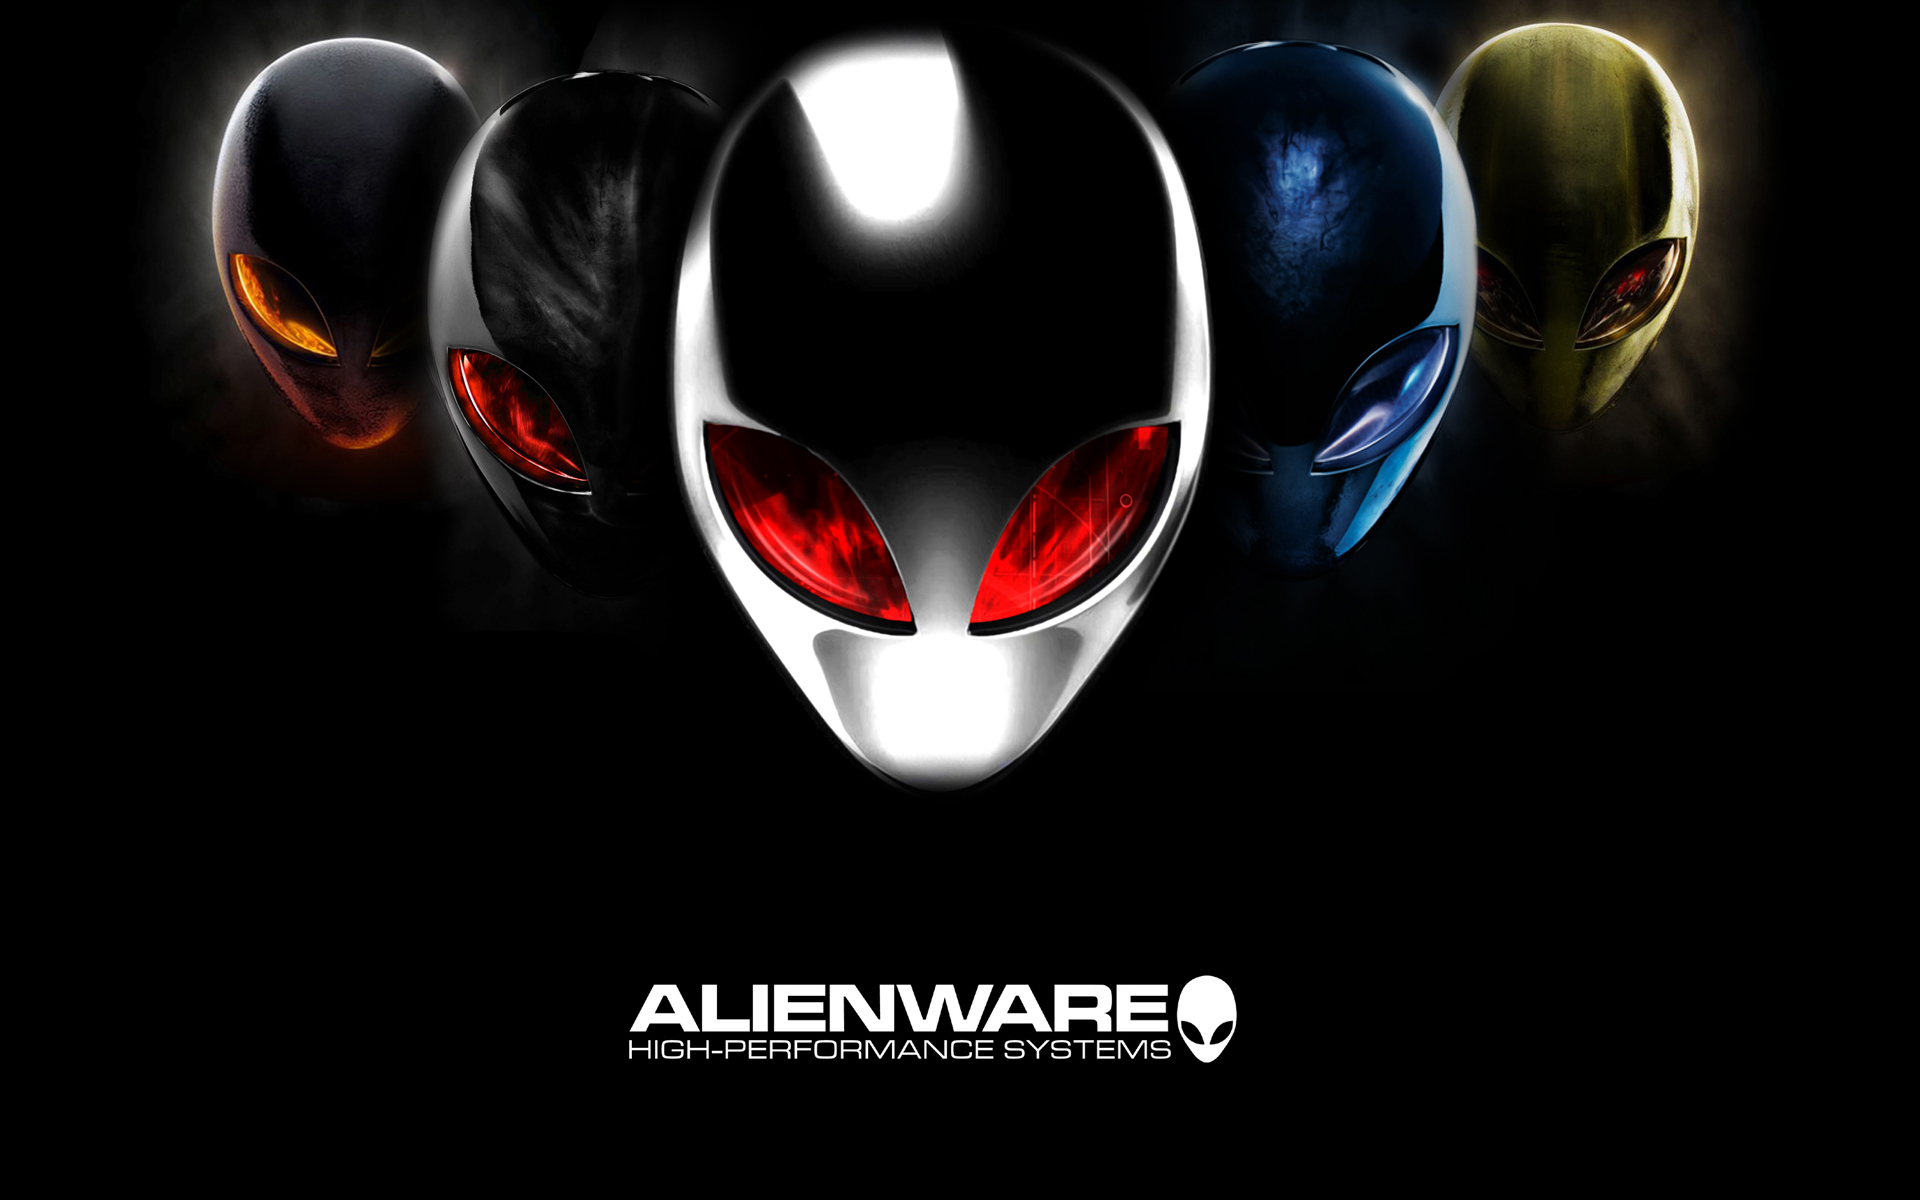 fond d'écran alienware,casque,personnage fictif,équipement de protection individuelle,conception graphique,affiche